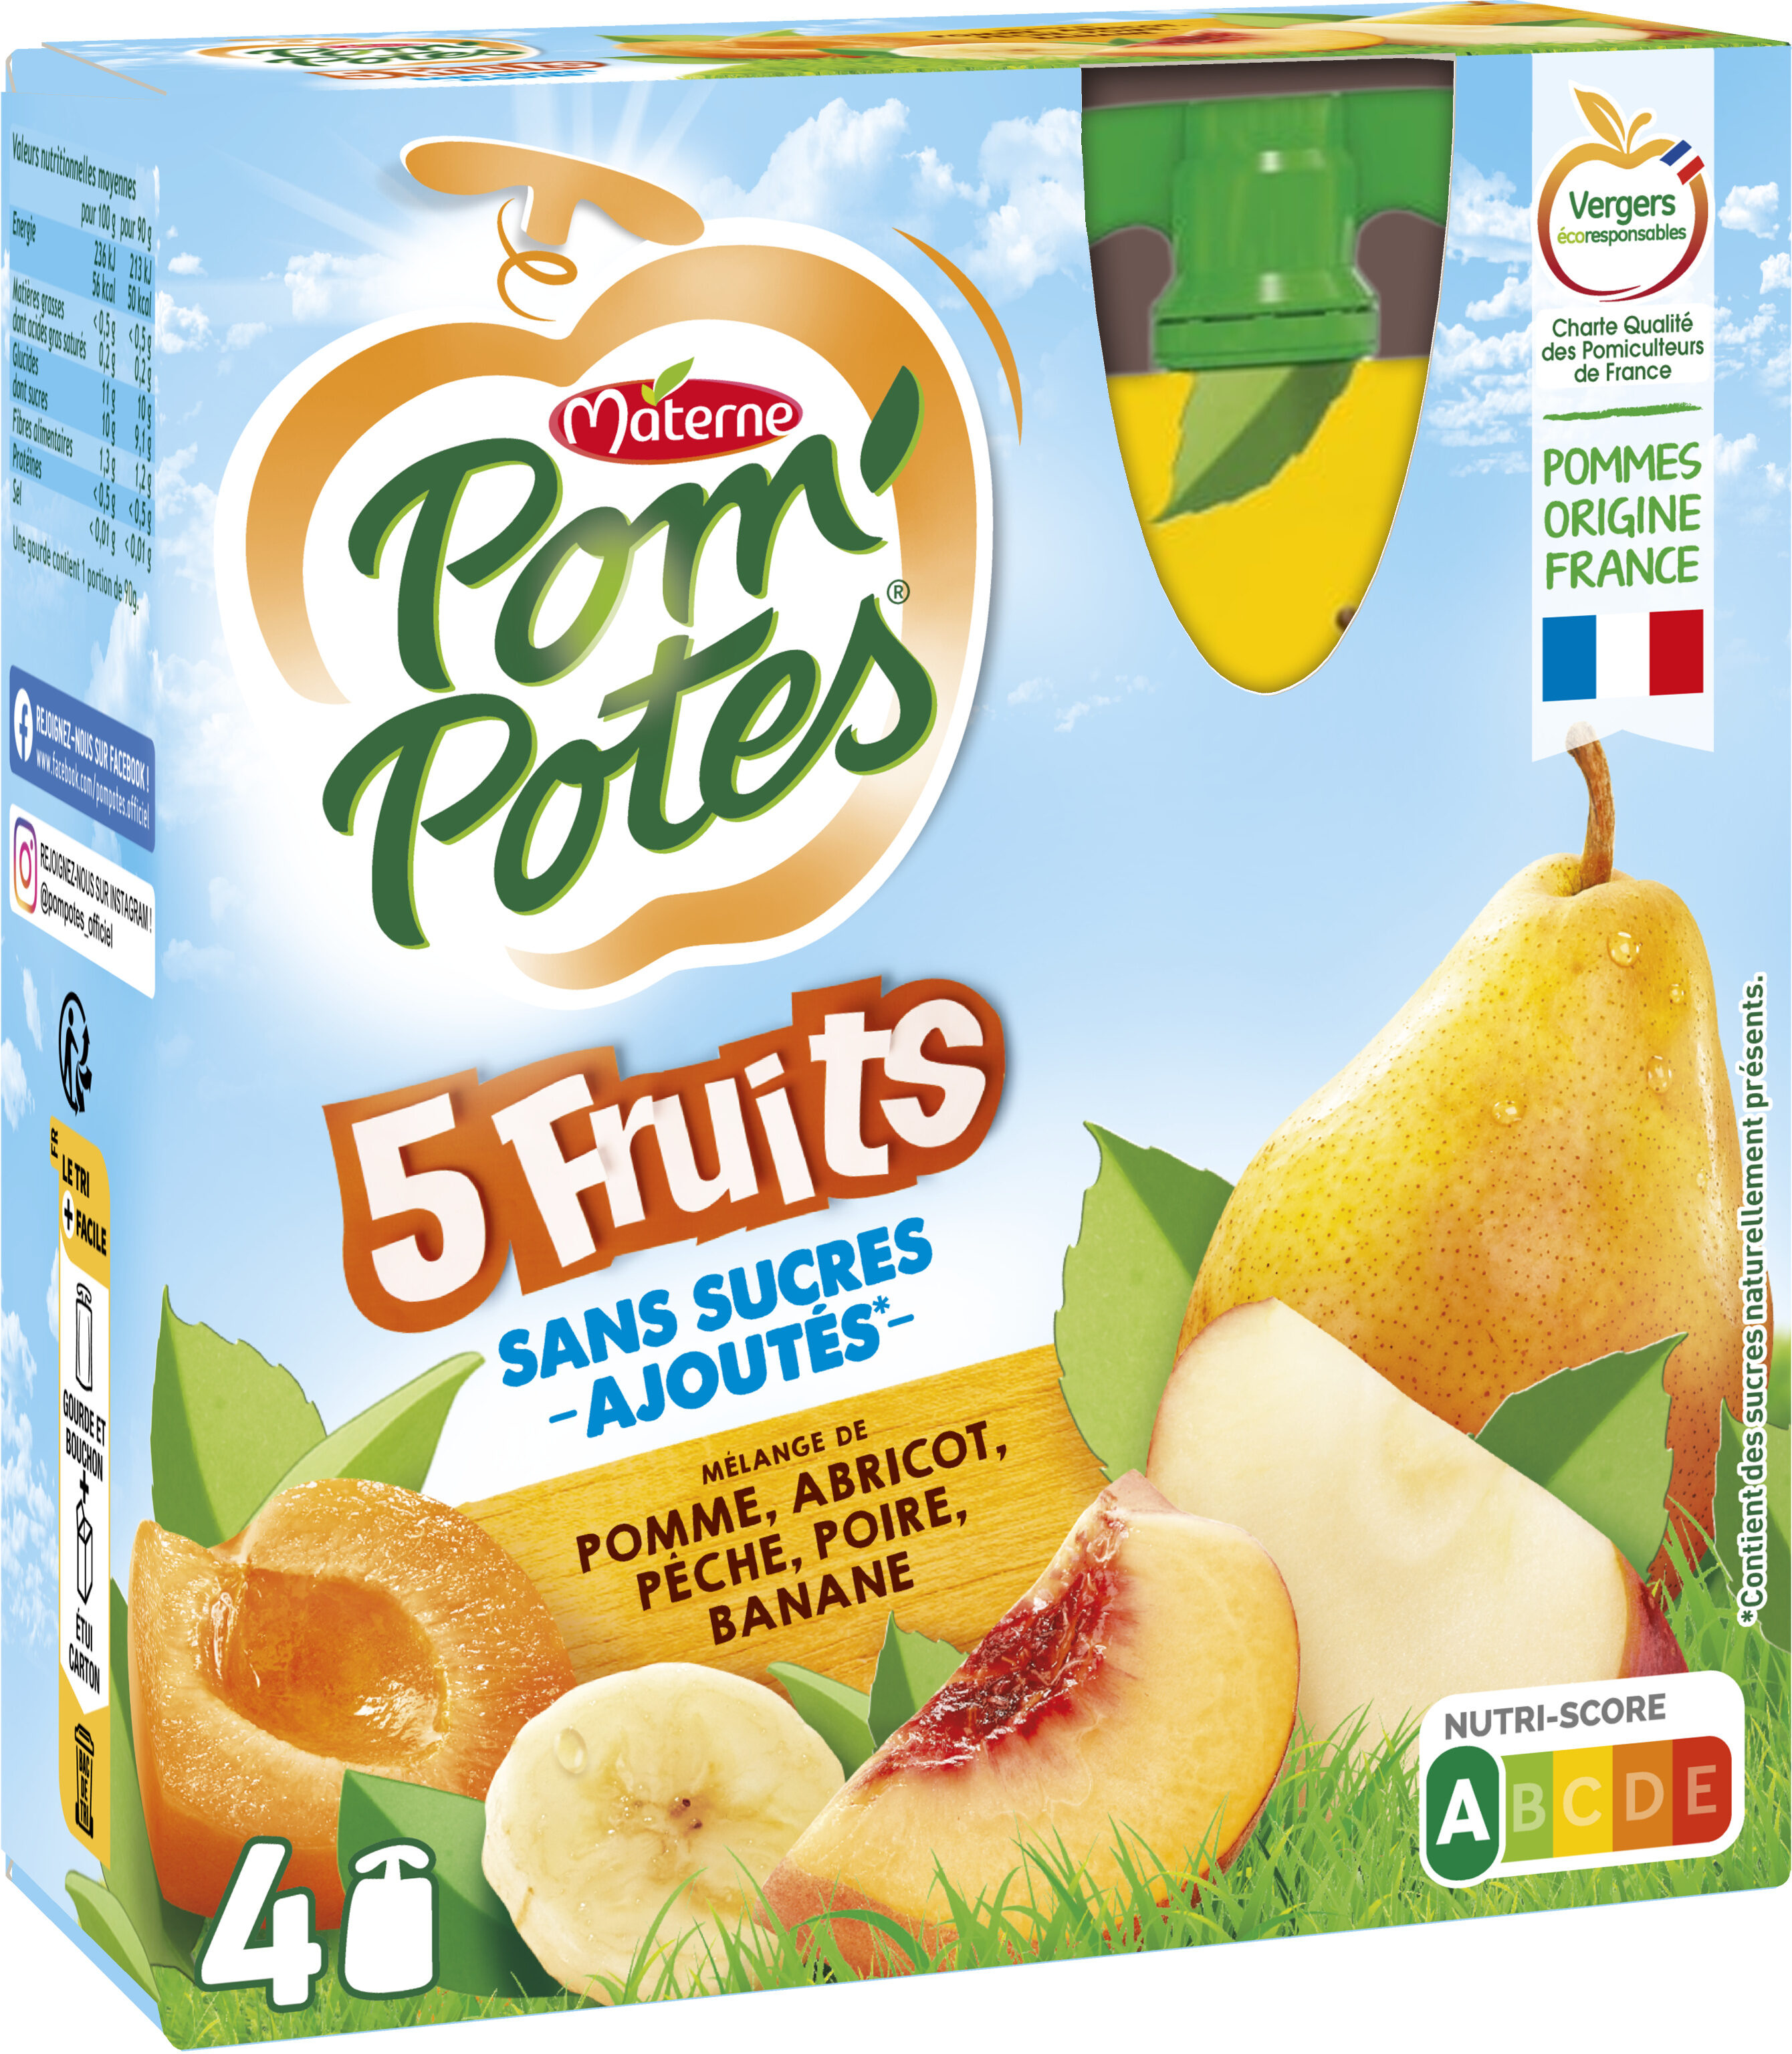 POM'POTES Compote Gourdes Sans Sucres Ajoutés 5 Fruits Jaunes (Pomme-Abricot-Pêche-Poire-Banane) 4x90g - Prodotto - fr